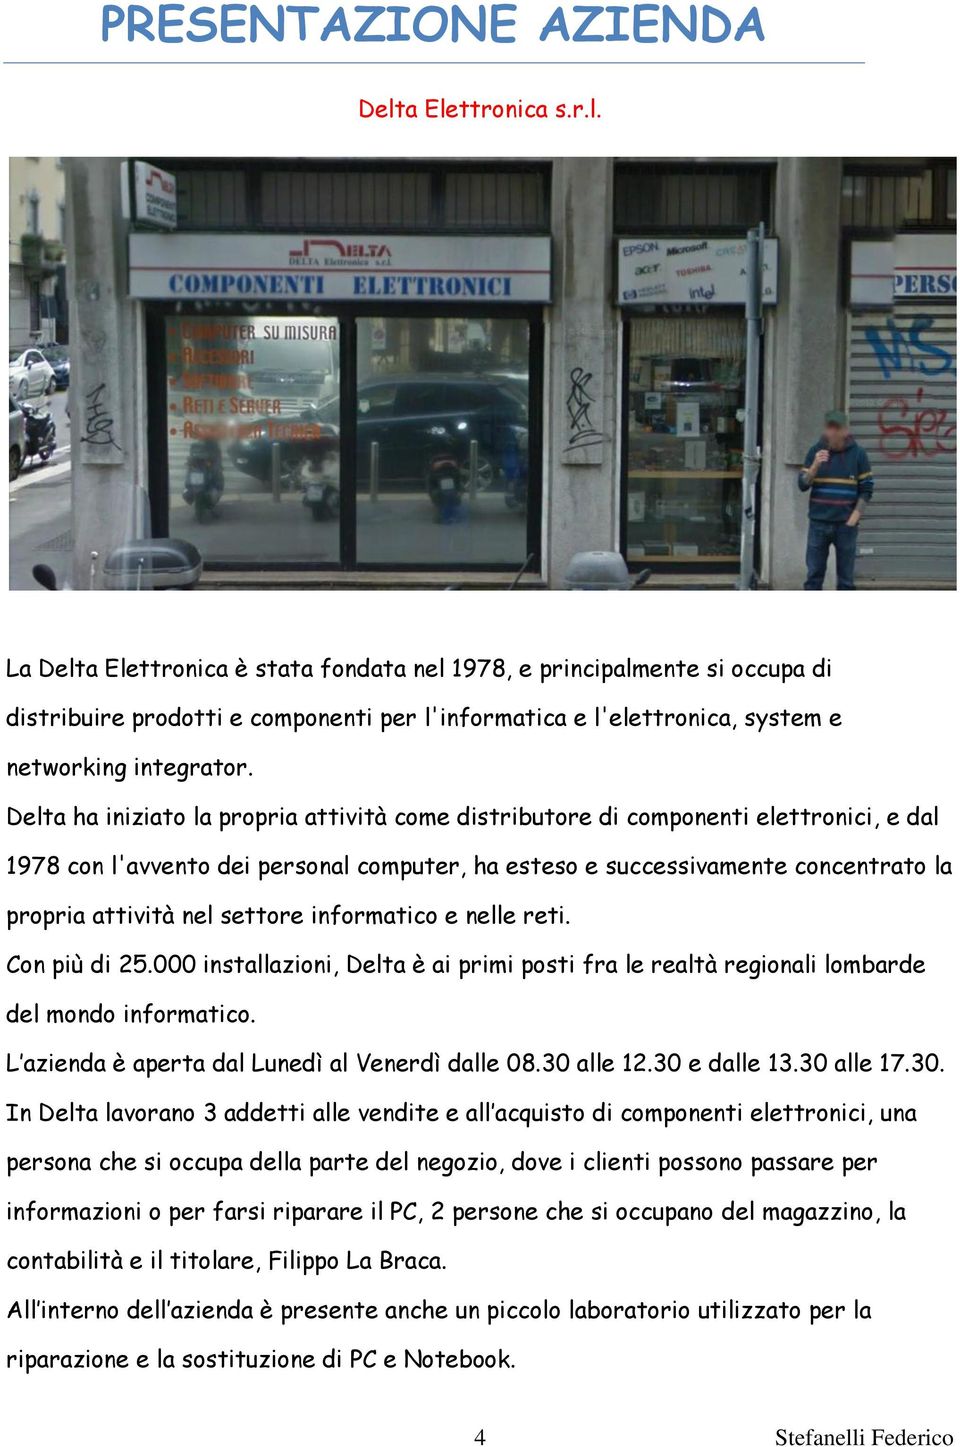 Delta ha iniziato la propria attività come distributore di componenti elettronici, e dal 1978 con l'avvento dei personal computer, ha esteso e successivamente concentrato la propria attività nel